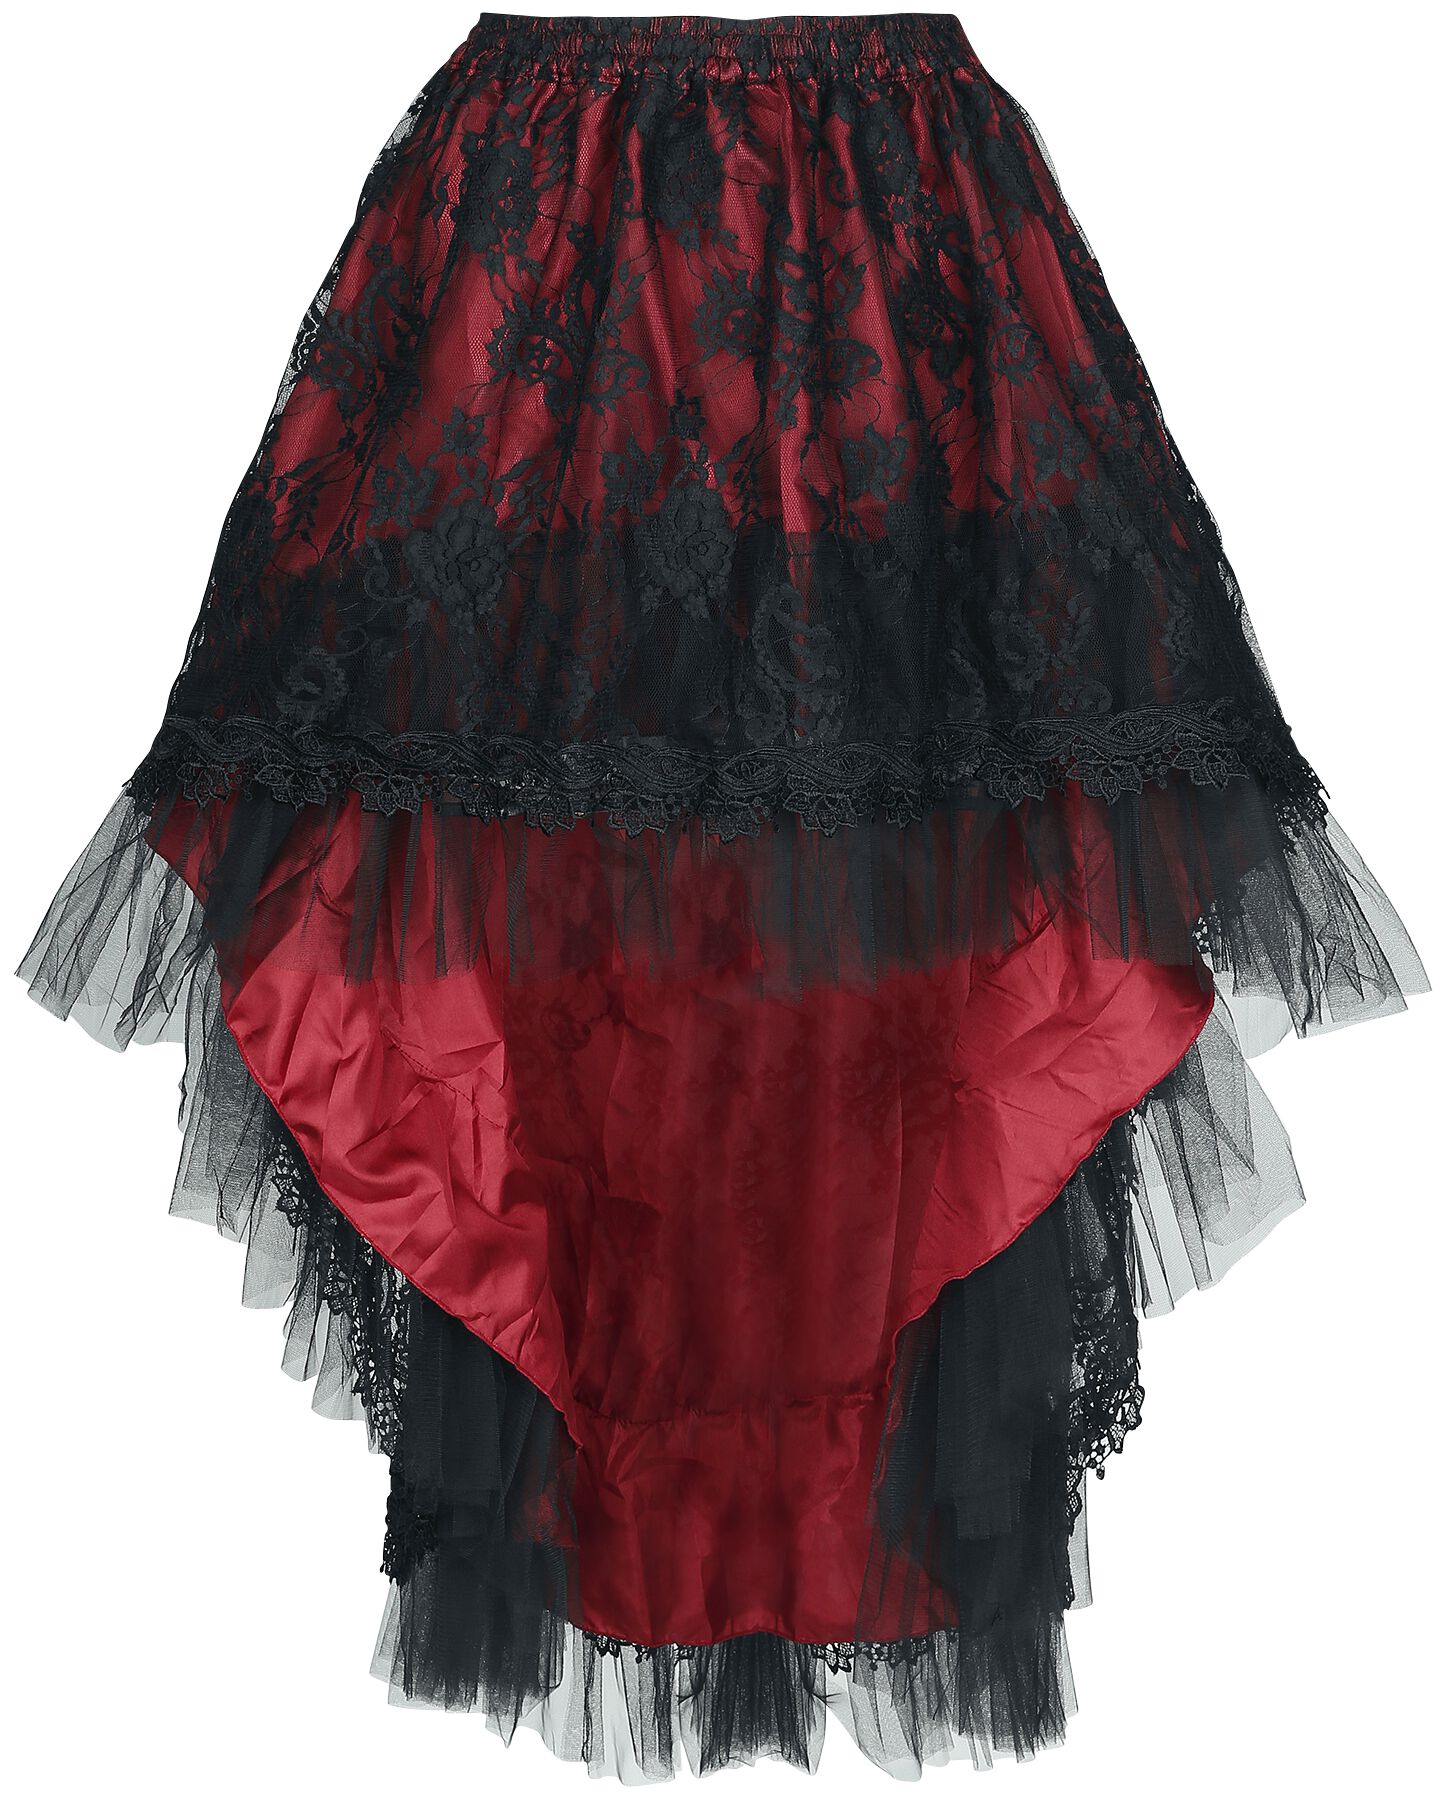 Sinister Gothic Gothic Skirt Medium-length skirt black red